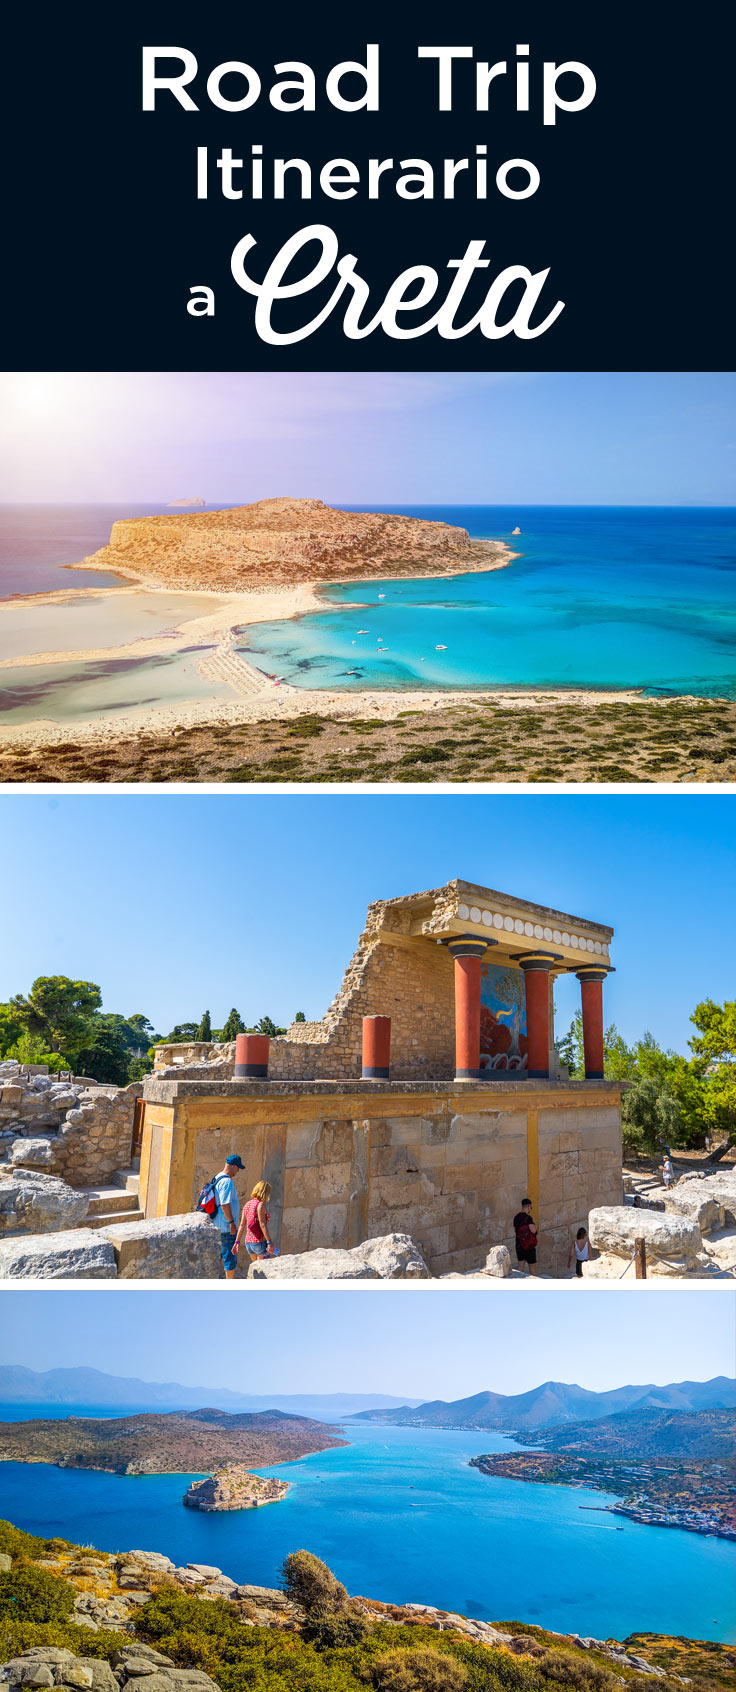 Creta road trip itinerario